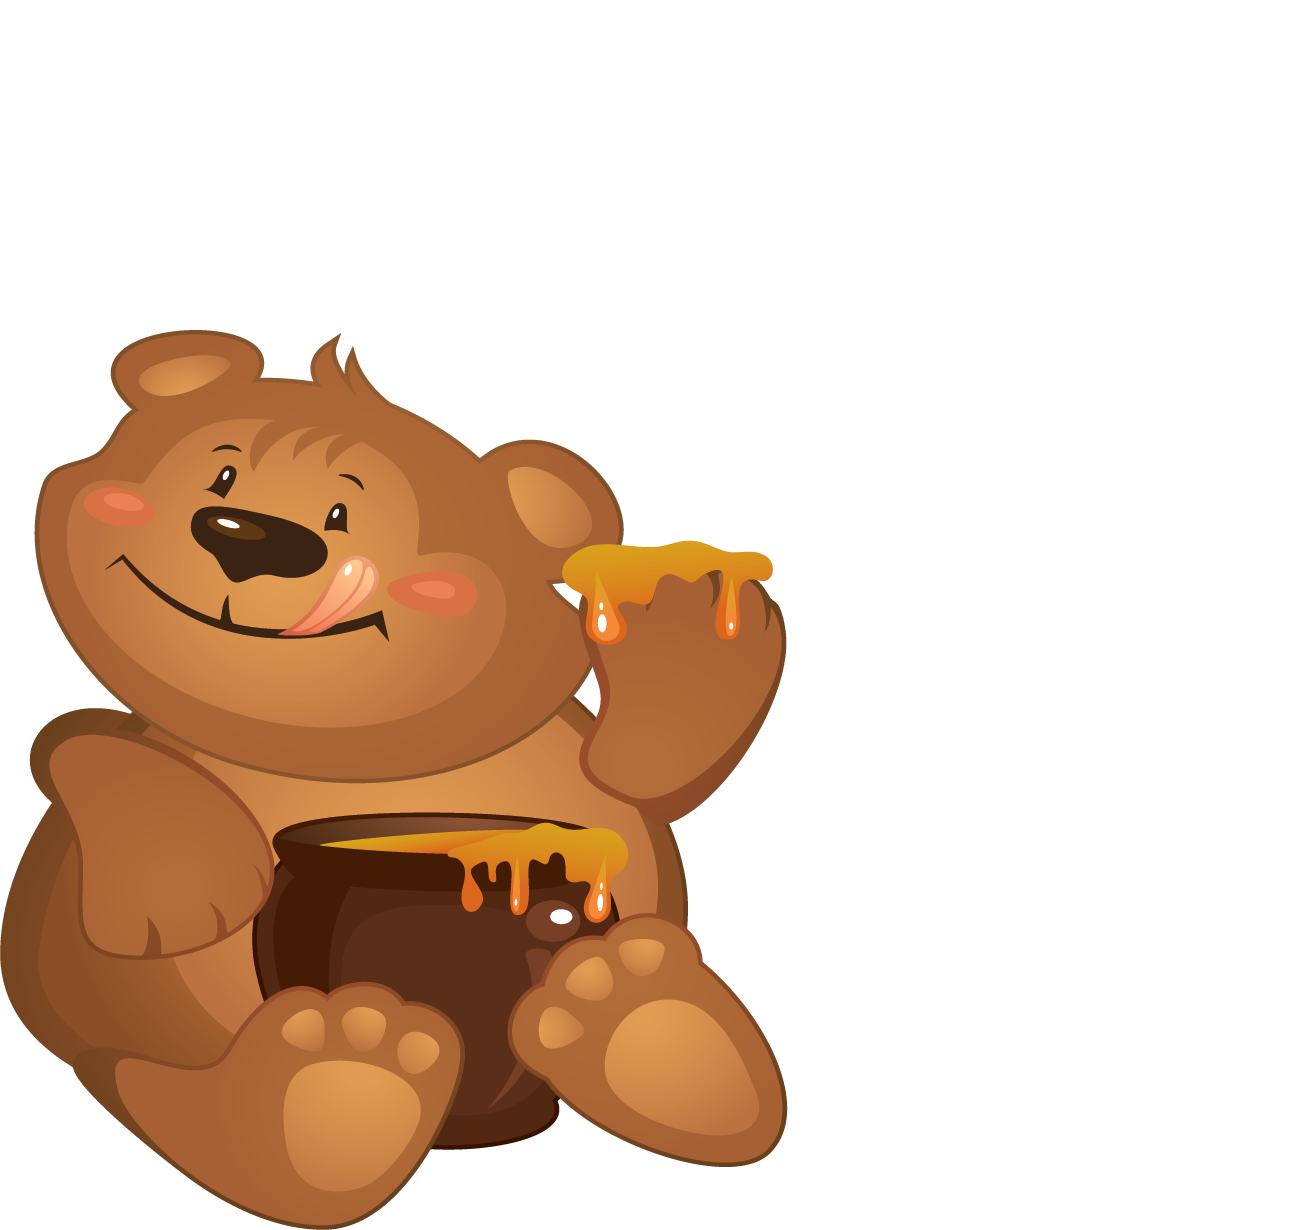 Медведя пчела мед. Мультяшные медведи. Медвежонок с бочонком меда. Медведь с медом. Мишка мультяшный.